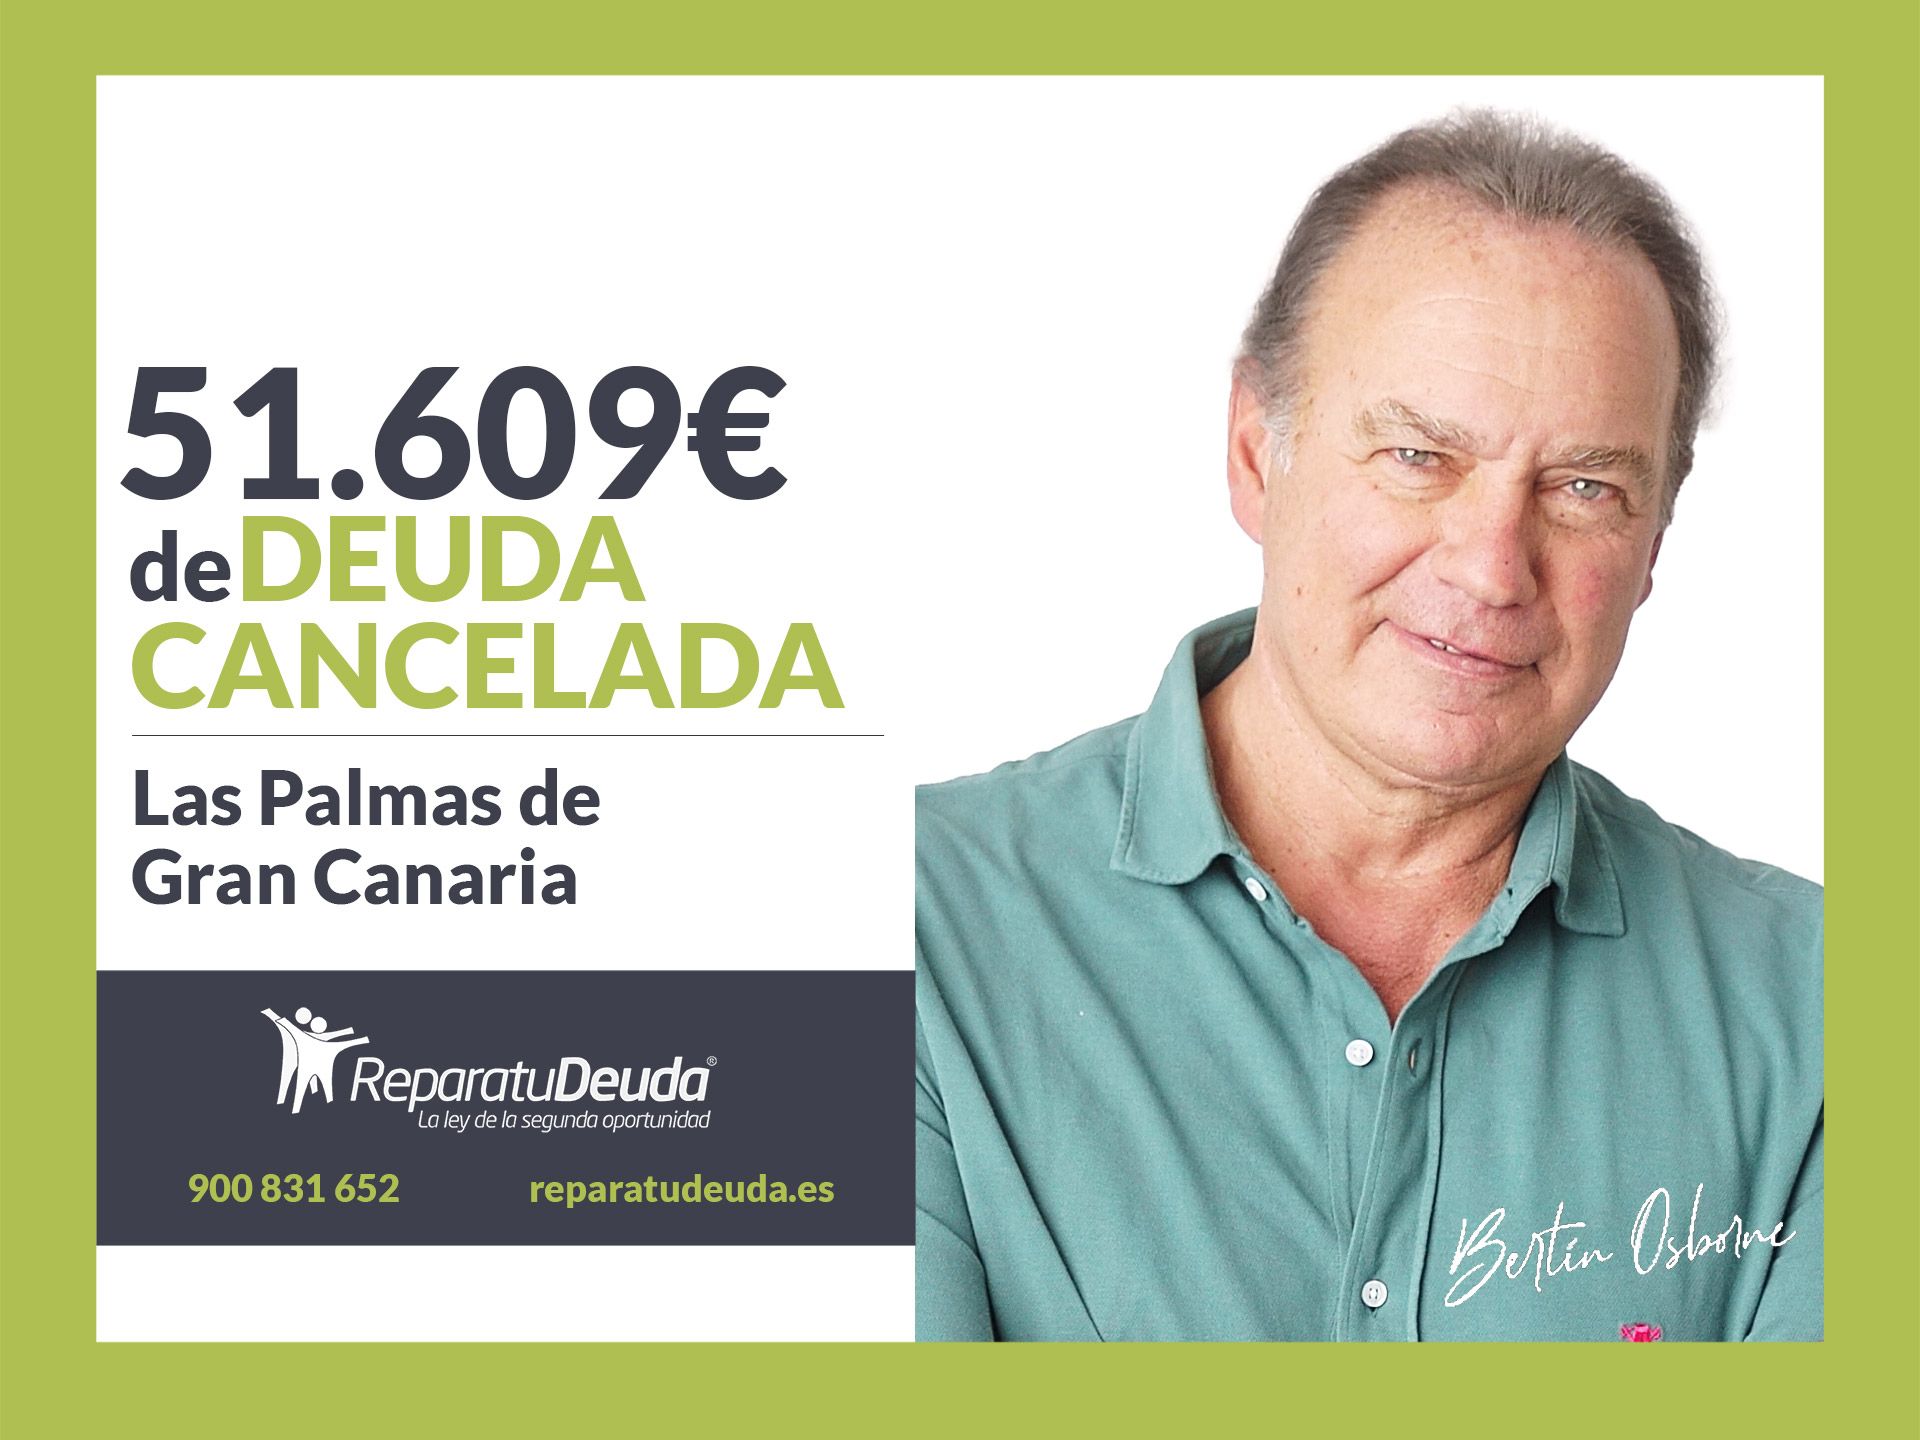 Repara tu Deuda abogados cancela 51.609? en Las Palmas de Gran Canaria con la Ley de Segunda Oportunidad